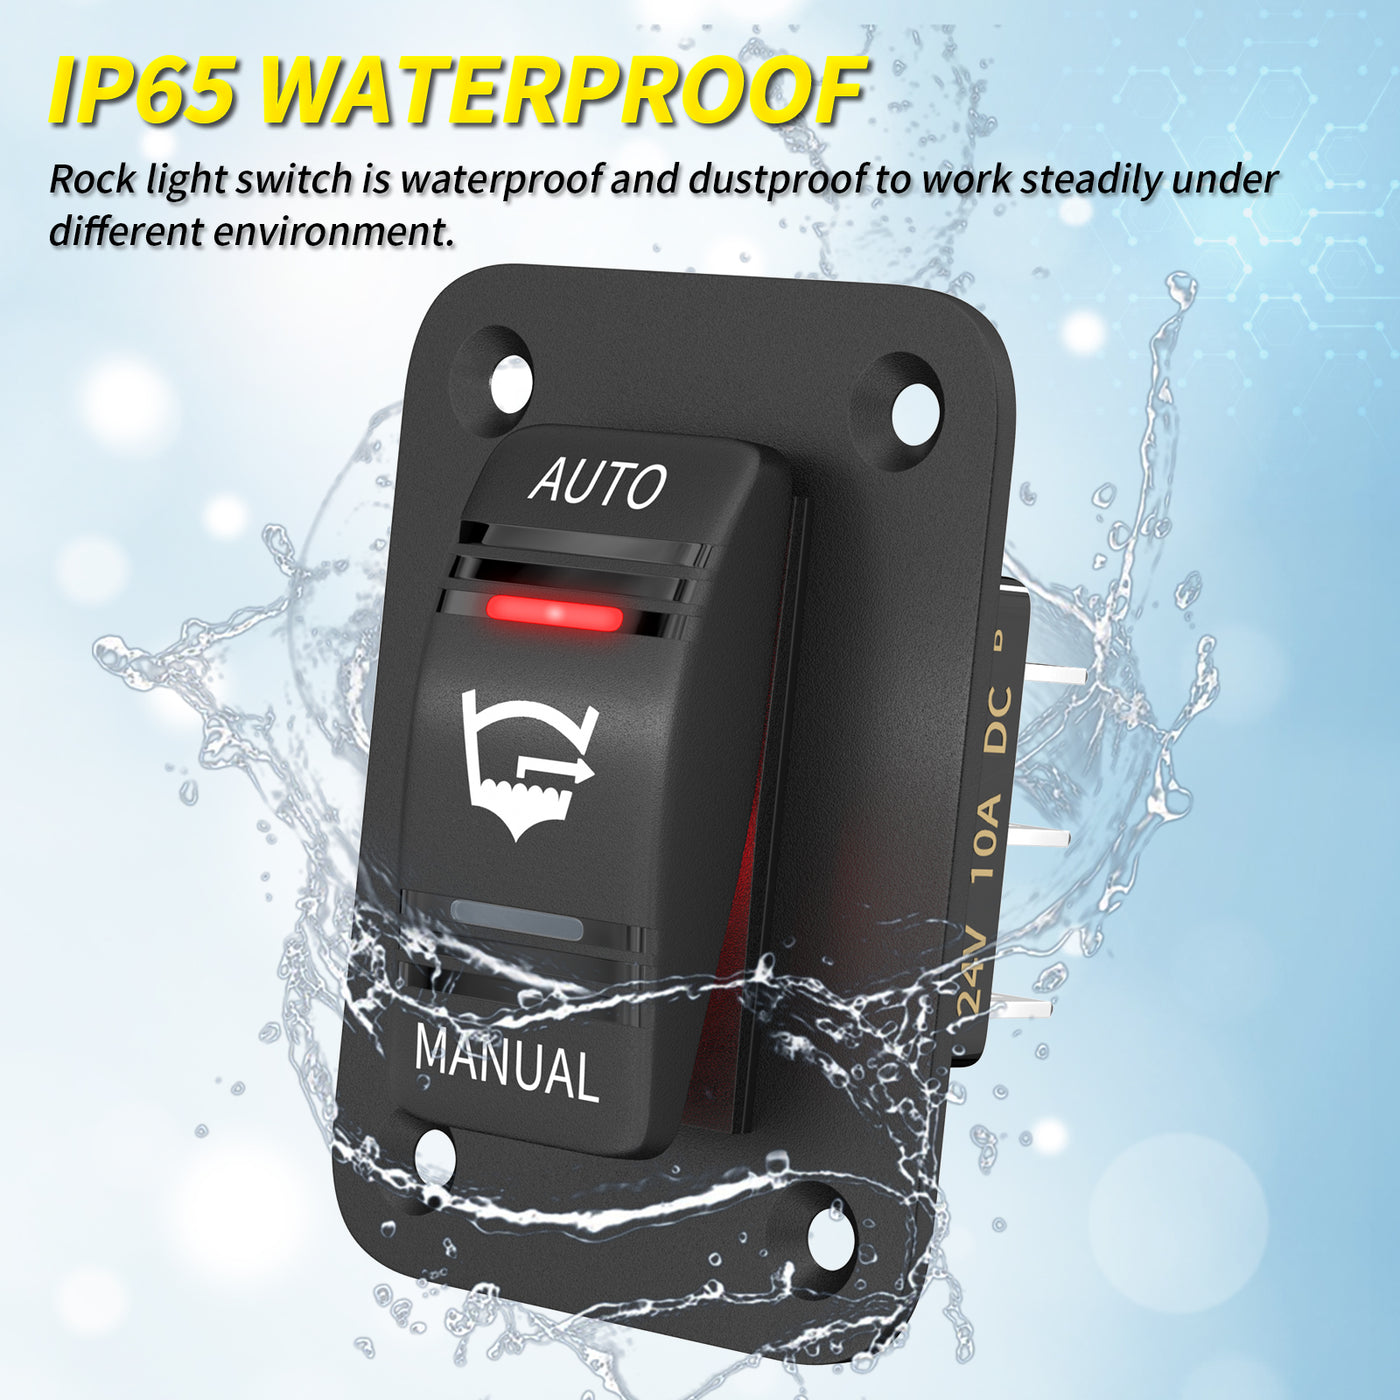 Waterproof 3 Way SPDT Auto Manual Bilge Pump Rocker Switch Panel - DAIER